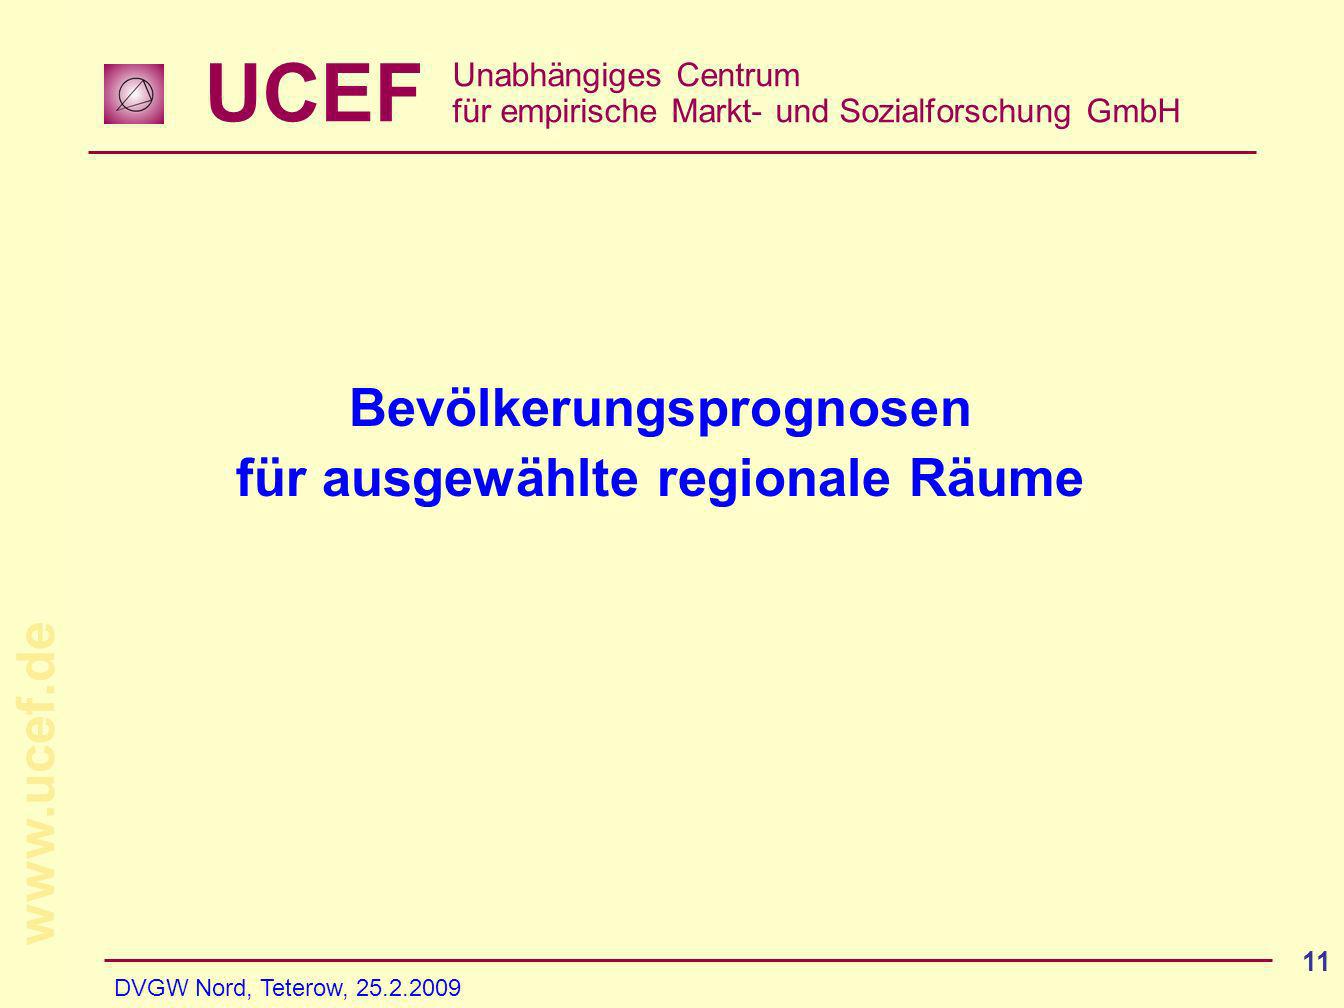 UCEF Unabhängiges Centrum für empirische Markt- und Sozialforschung GmbH   DVGW Nord, Teterow, Bevölkerungsprognosen für ausgewählte regionale Räume